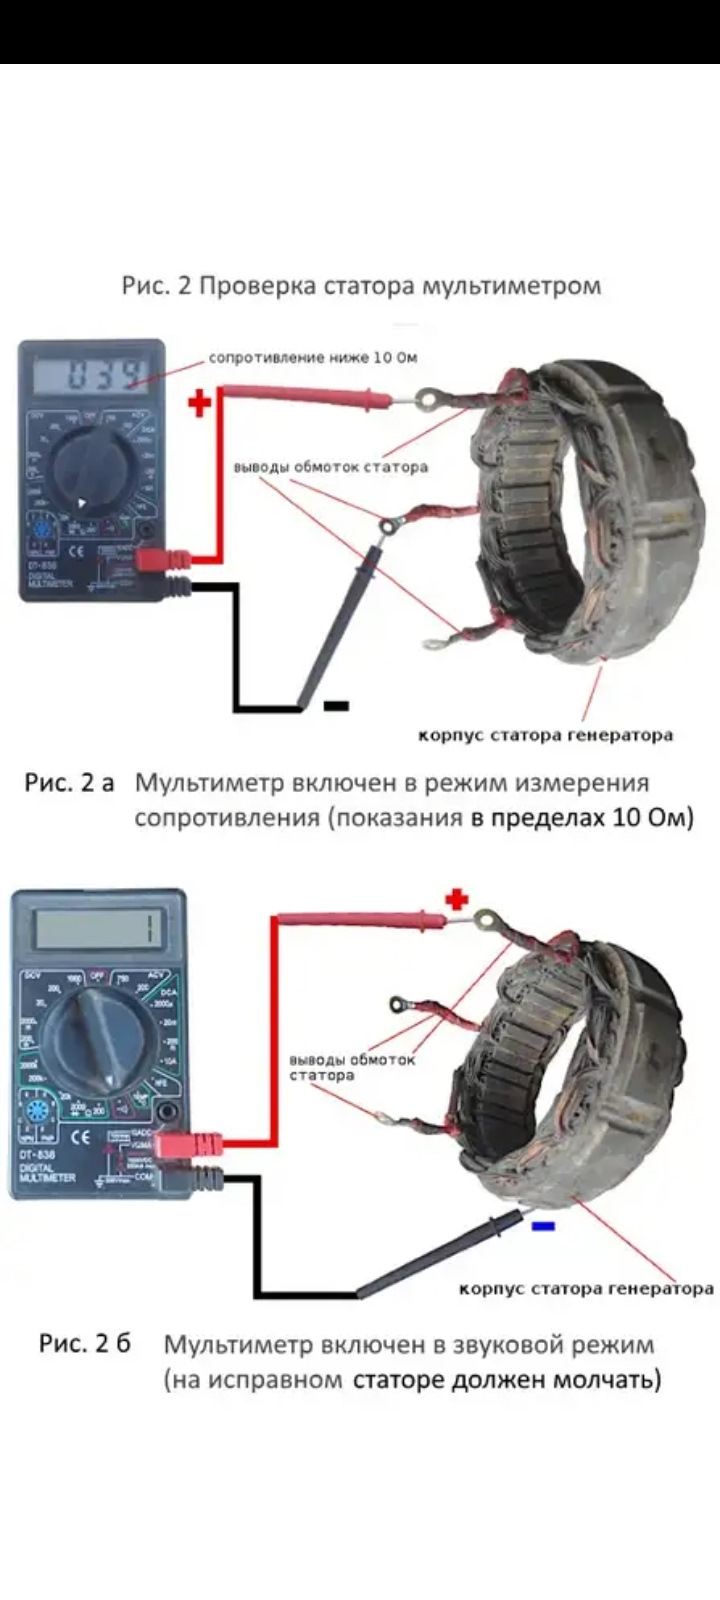 Как проверить статор электродвигателя мультиметром